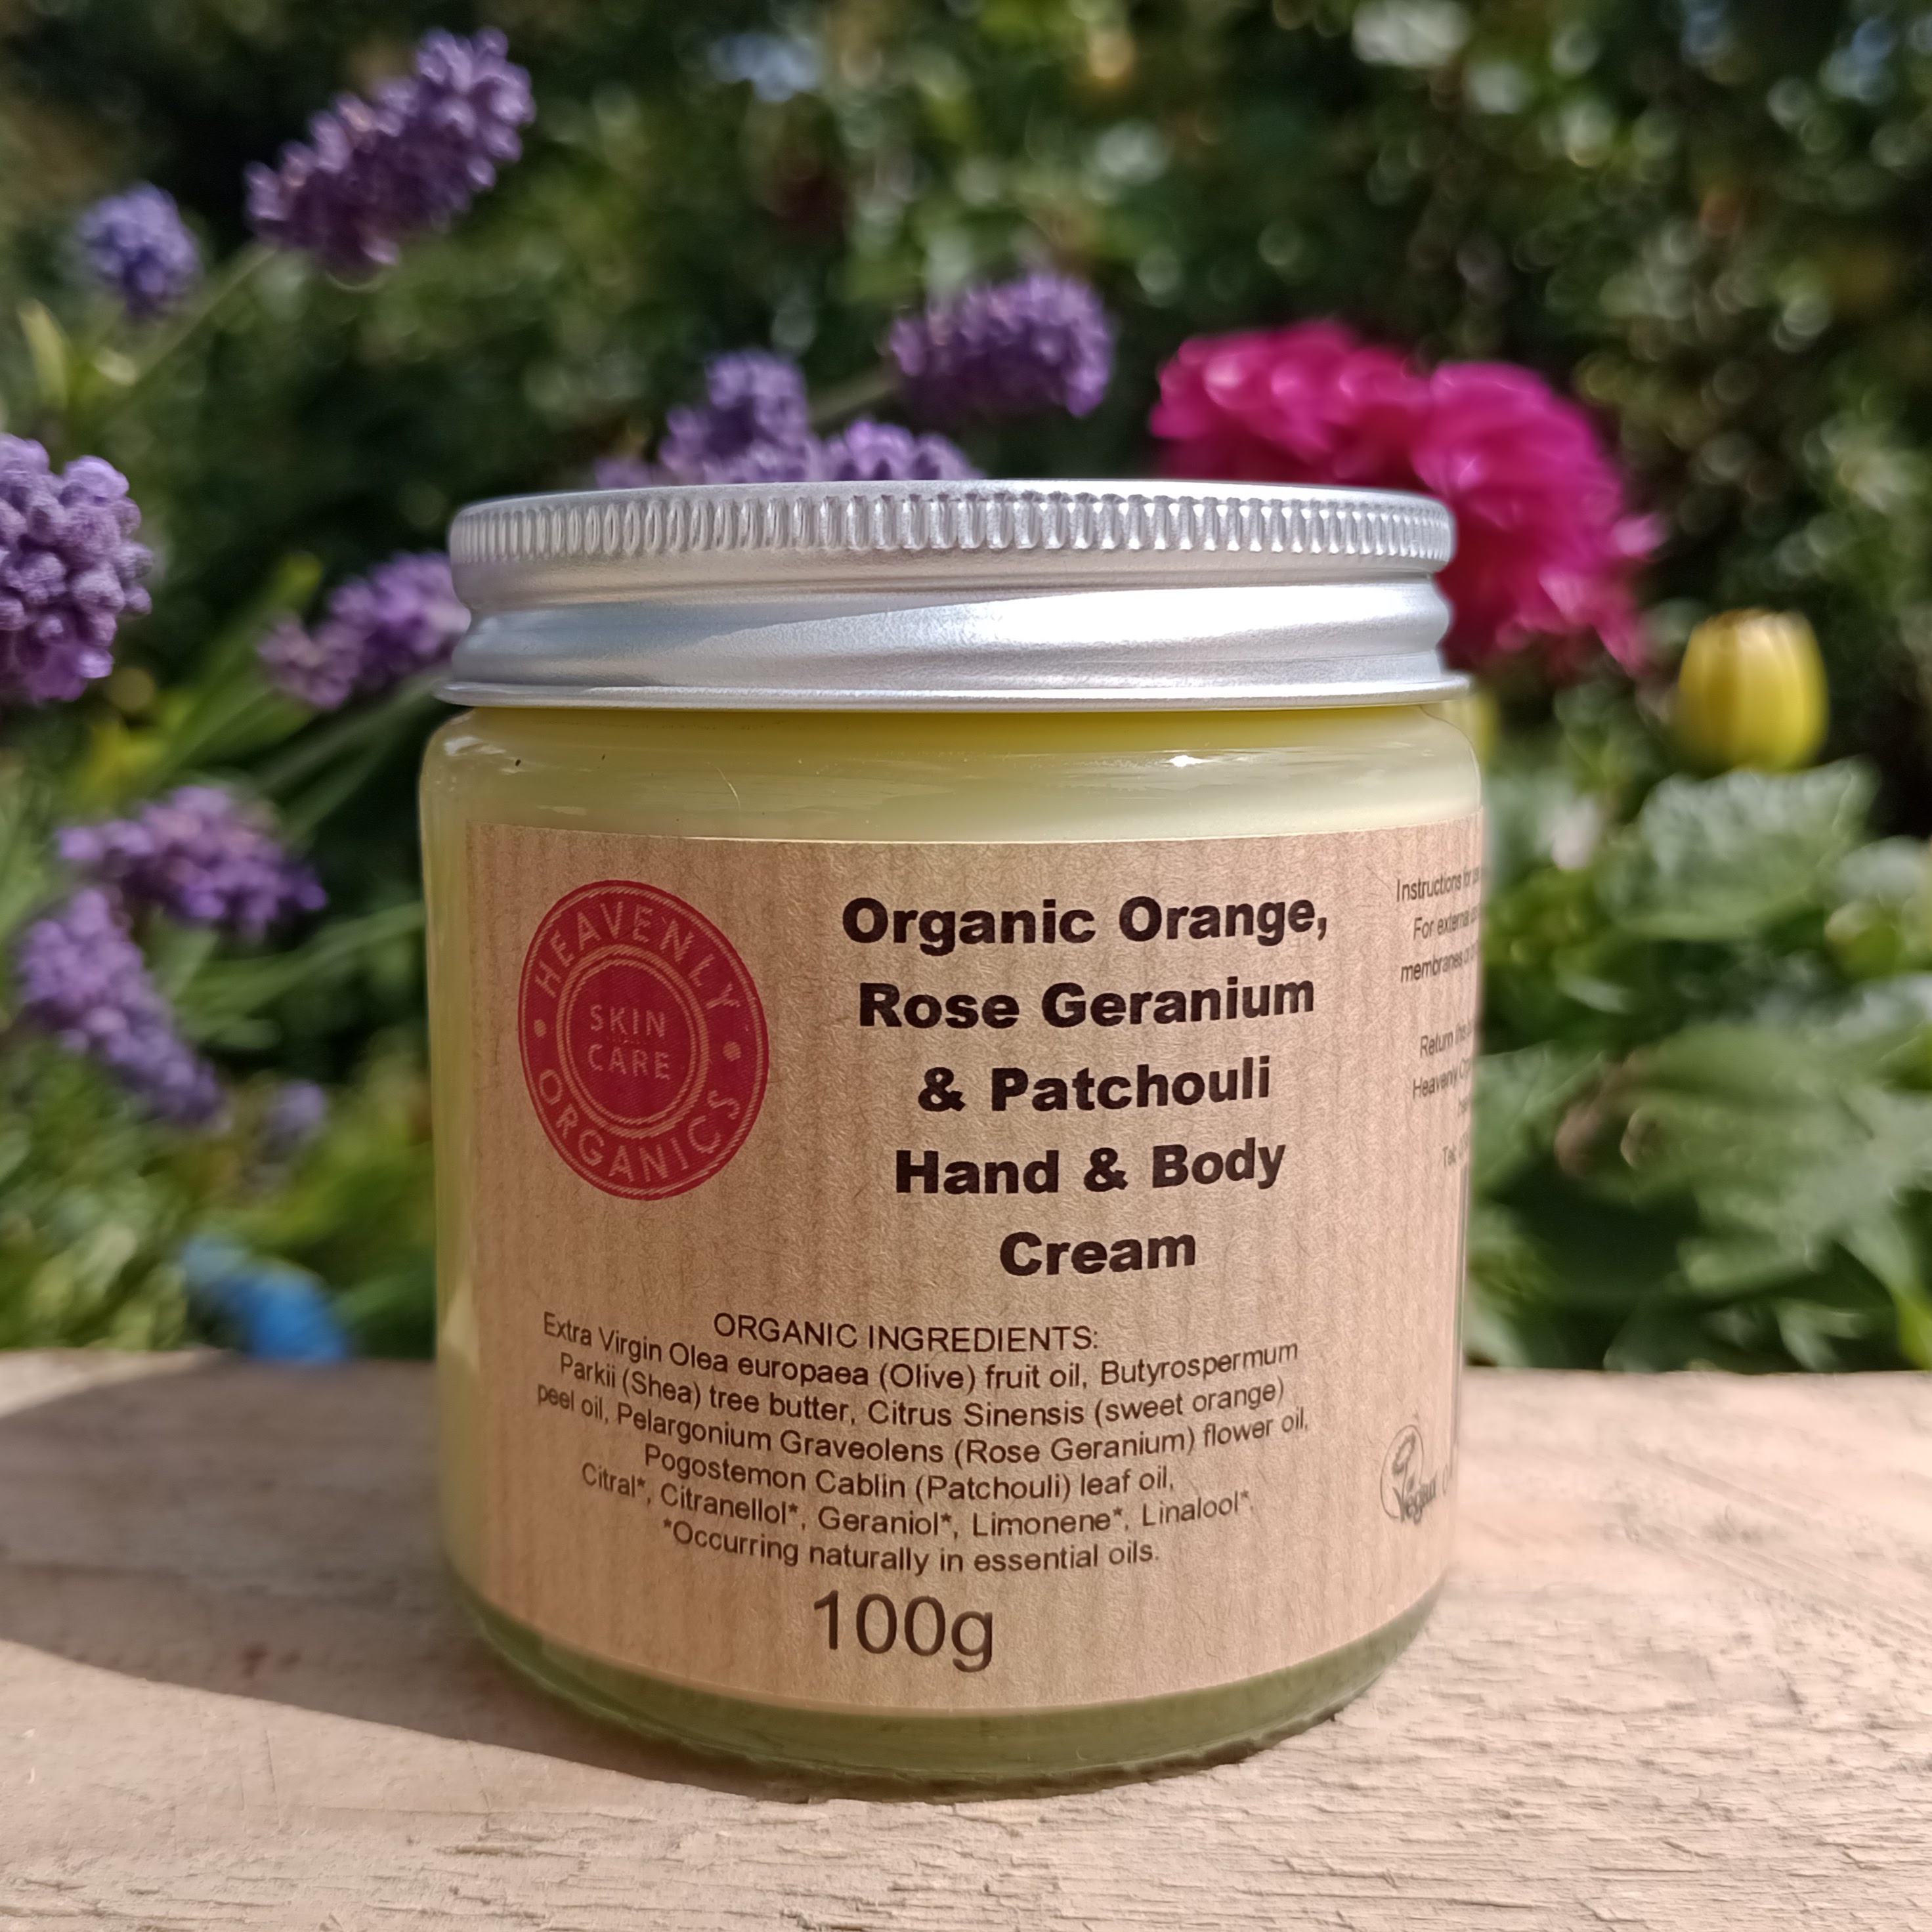 Organic Orange, Rose Geranium & Patchouli Hand & Body Cream